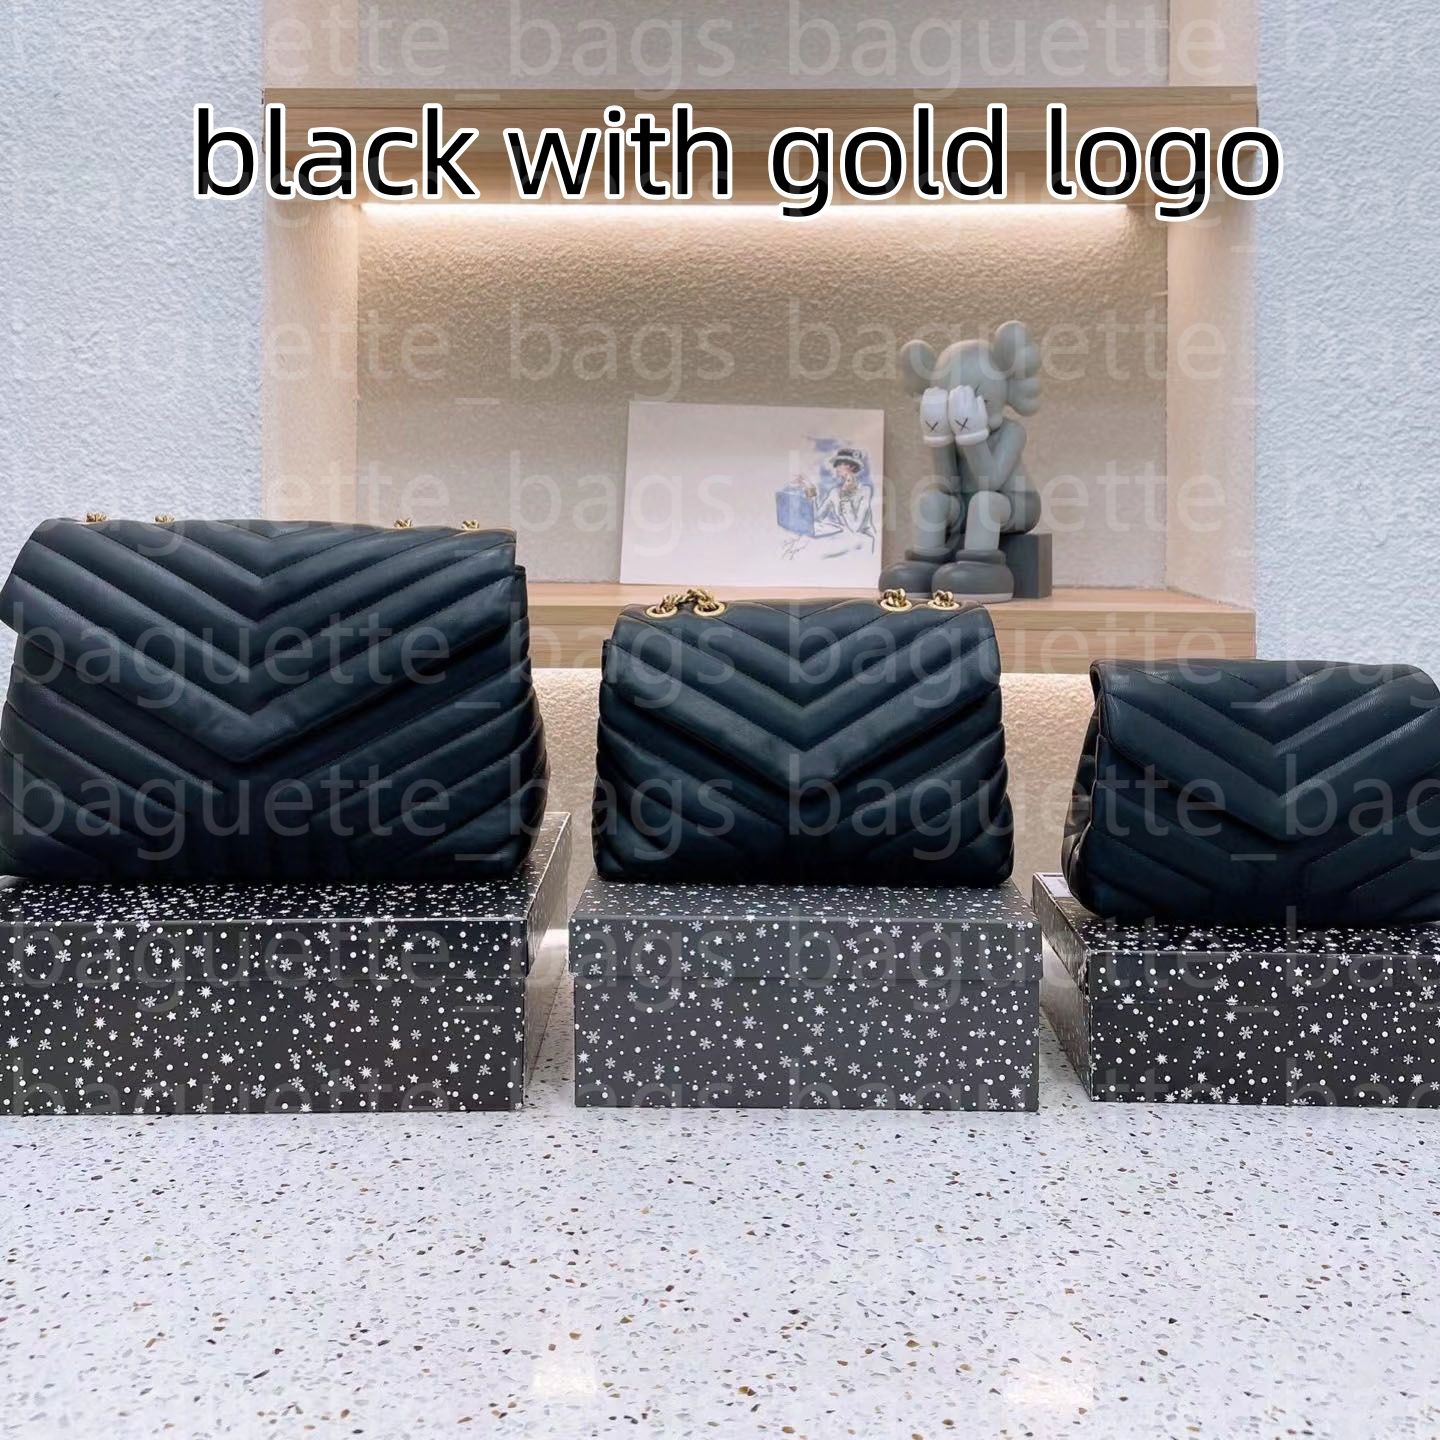 Logotipo preto_gold